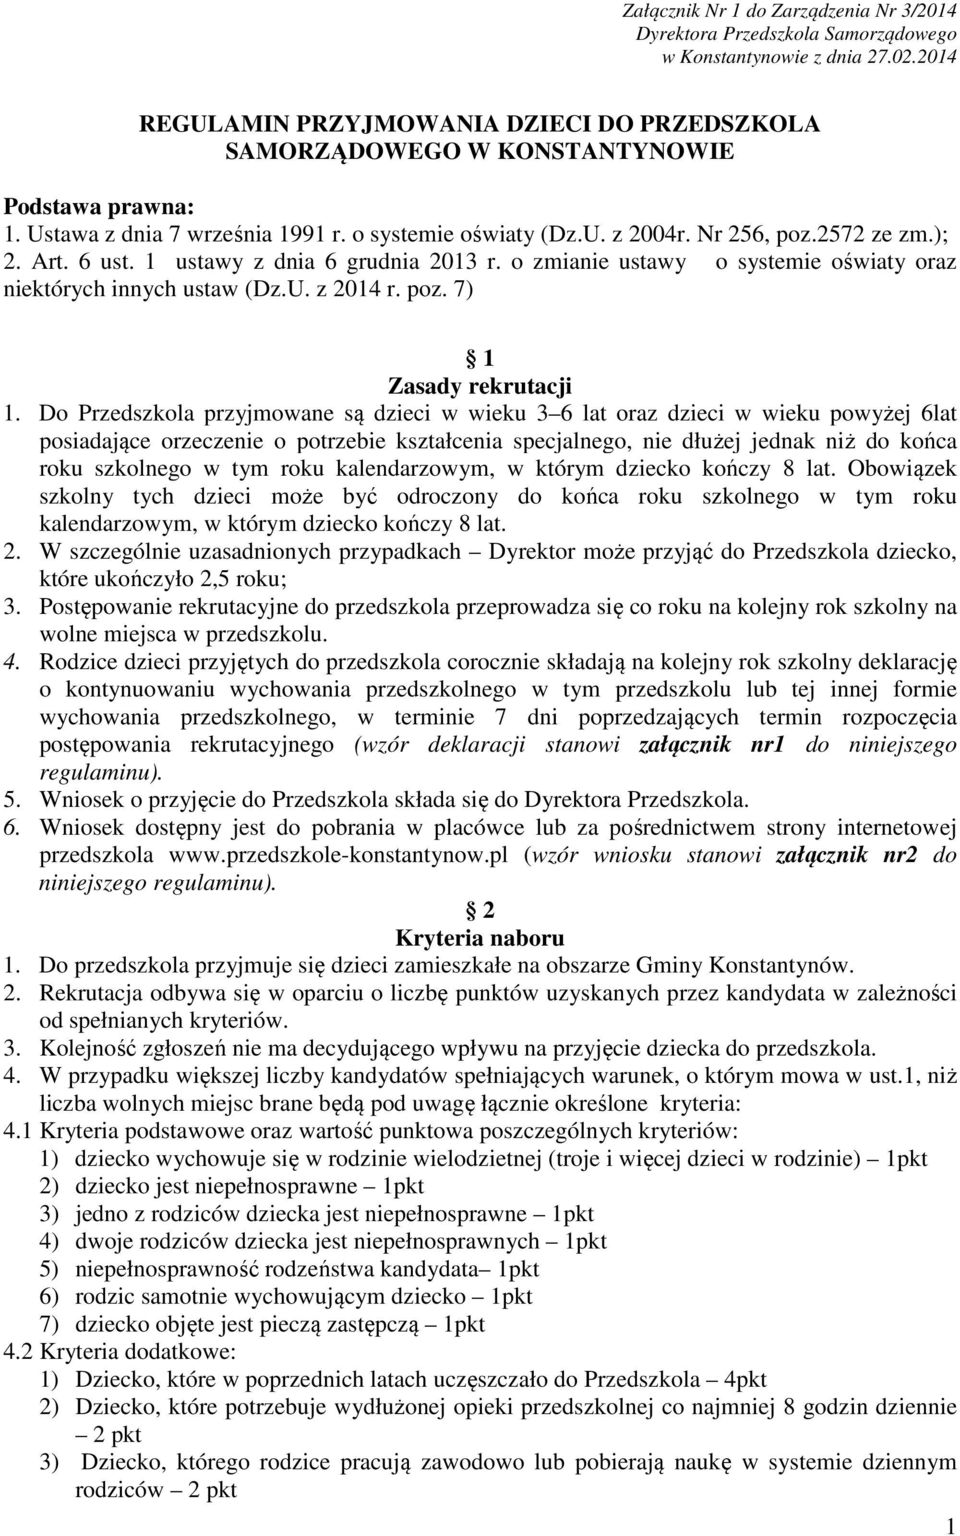 Art. 6 ust. 1 ustawy z dnia 6 grudnia 2013 r. o zmianie ustawy o systemie oświaty oraz niektórych innych ustaw (Dz.U. z 2014 r. poz. 7) 1 Zasady rekrutacji 1.